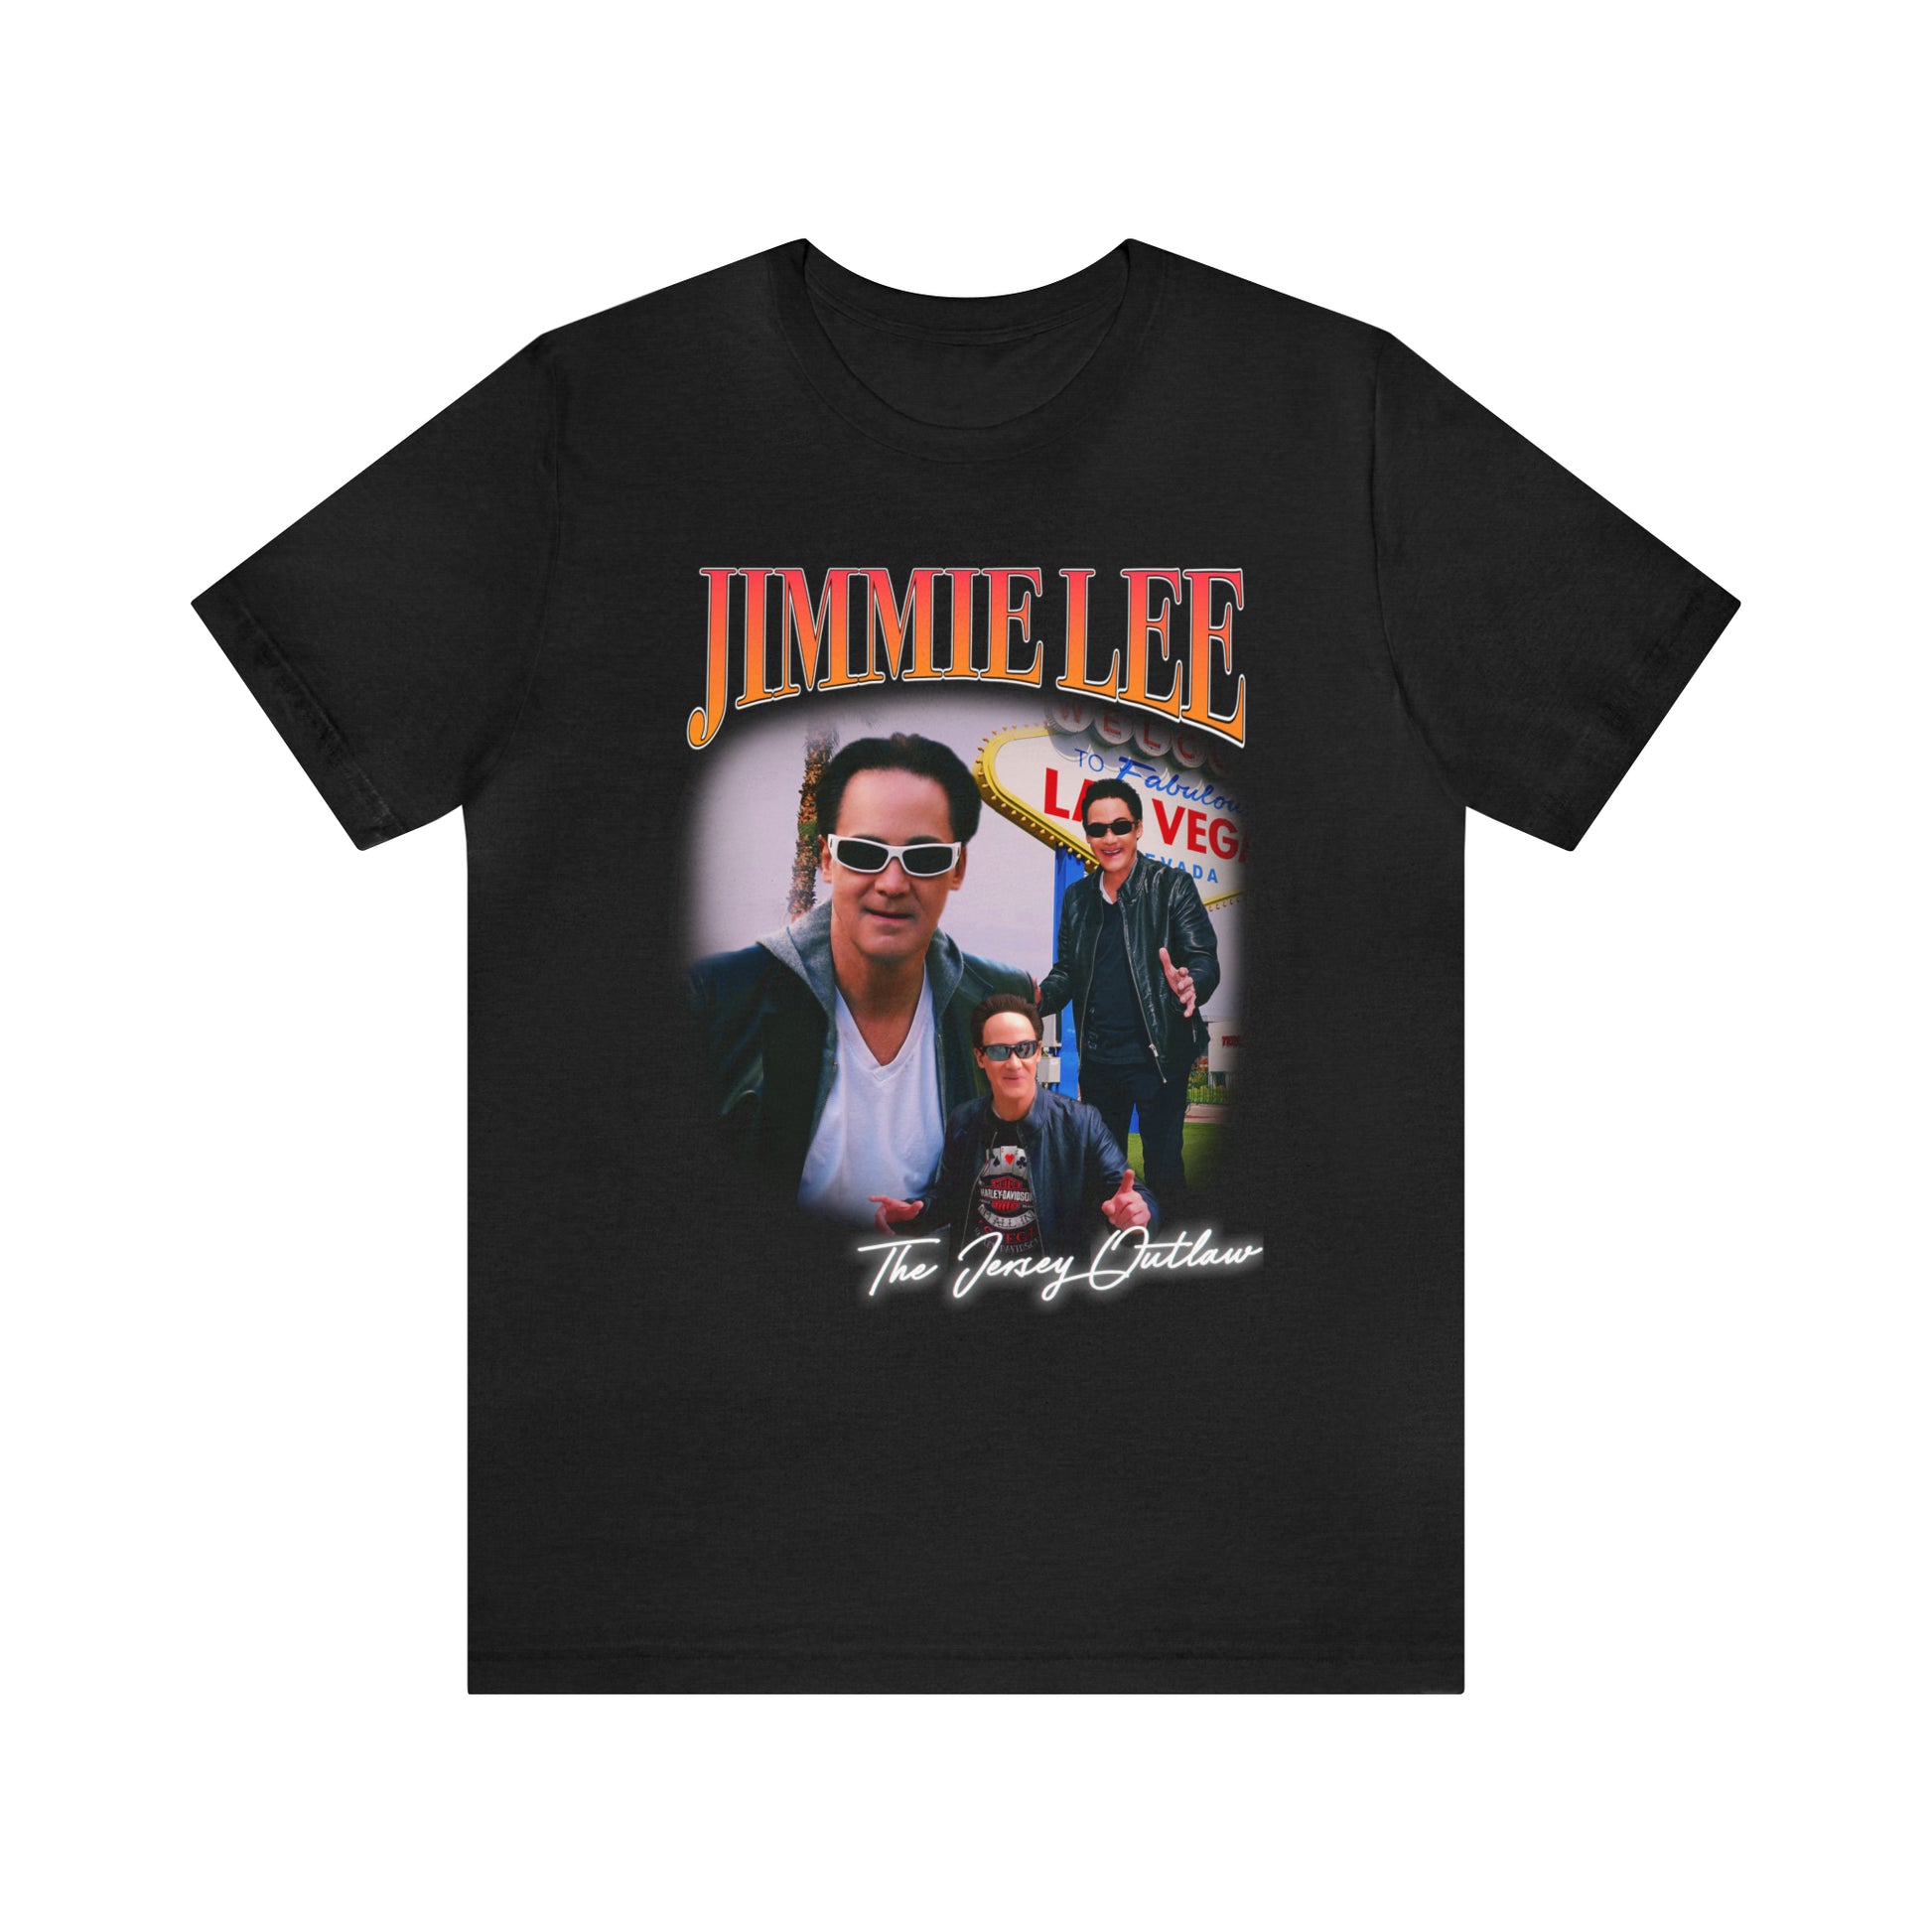 Jimmie Lee The Jersey Outlaw Fan Shirt – JIMMIEWEAR